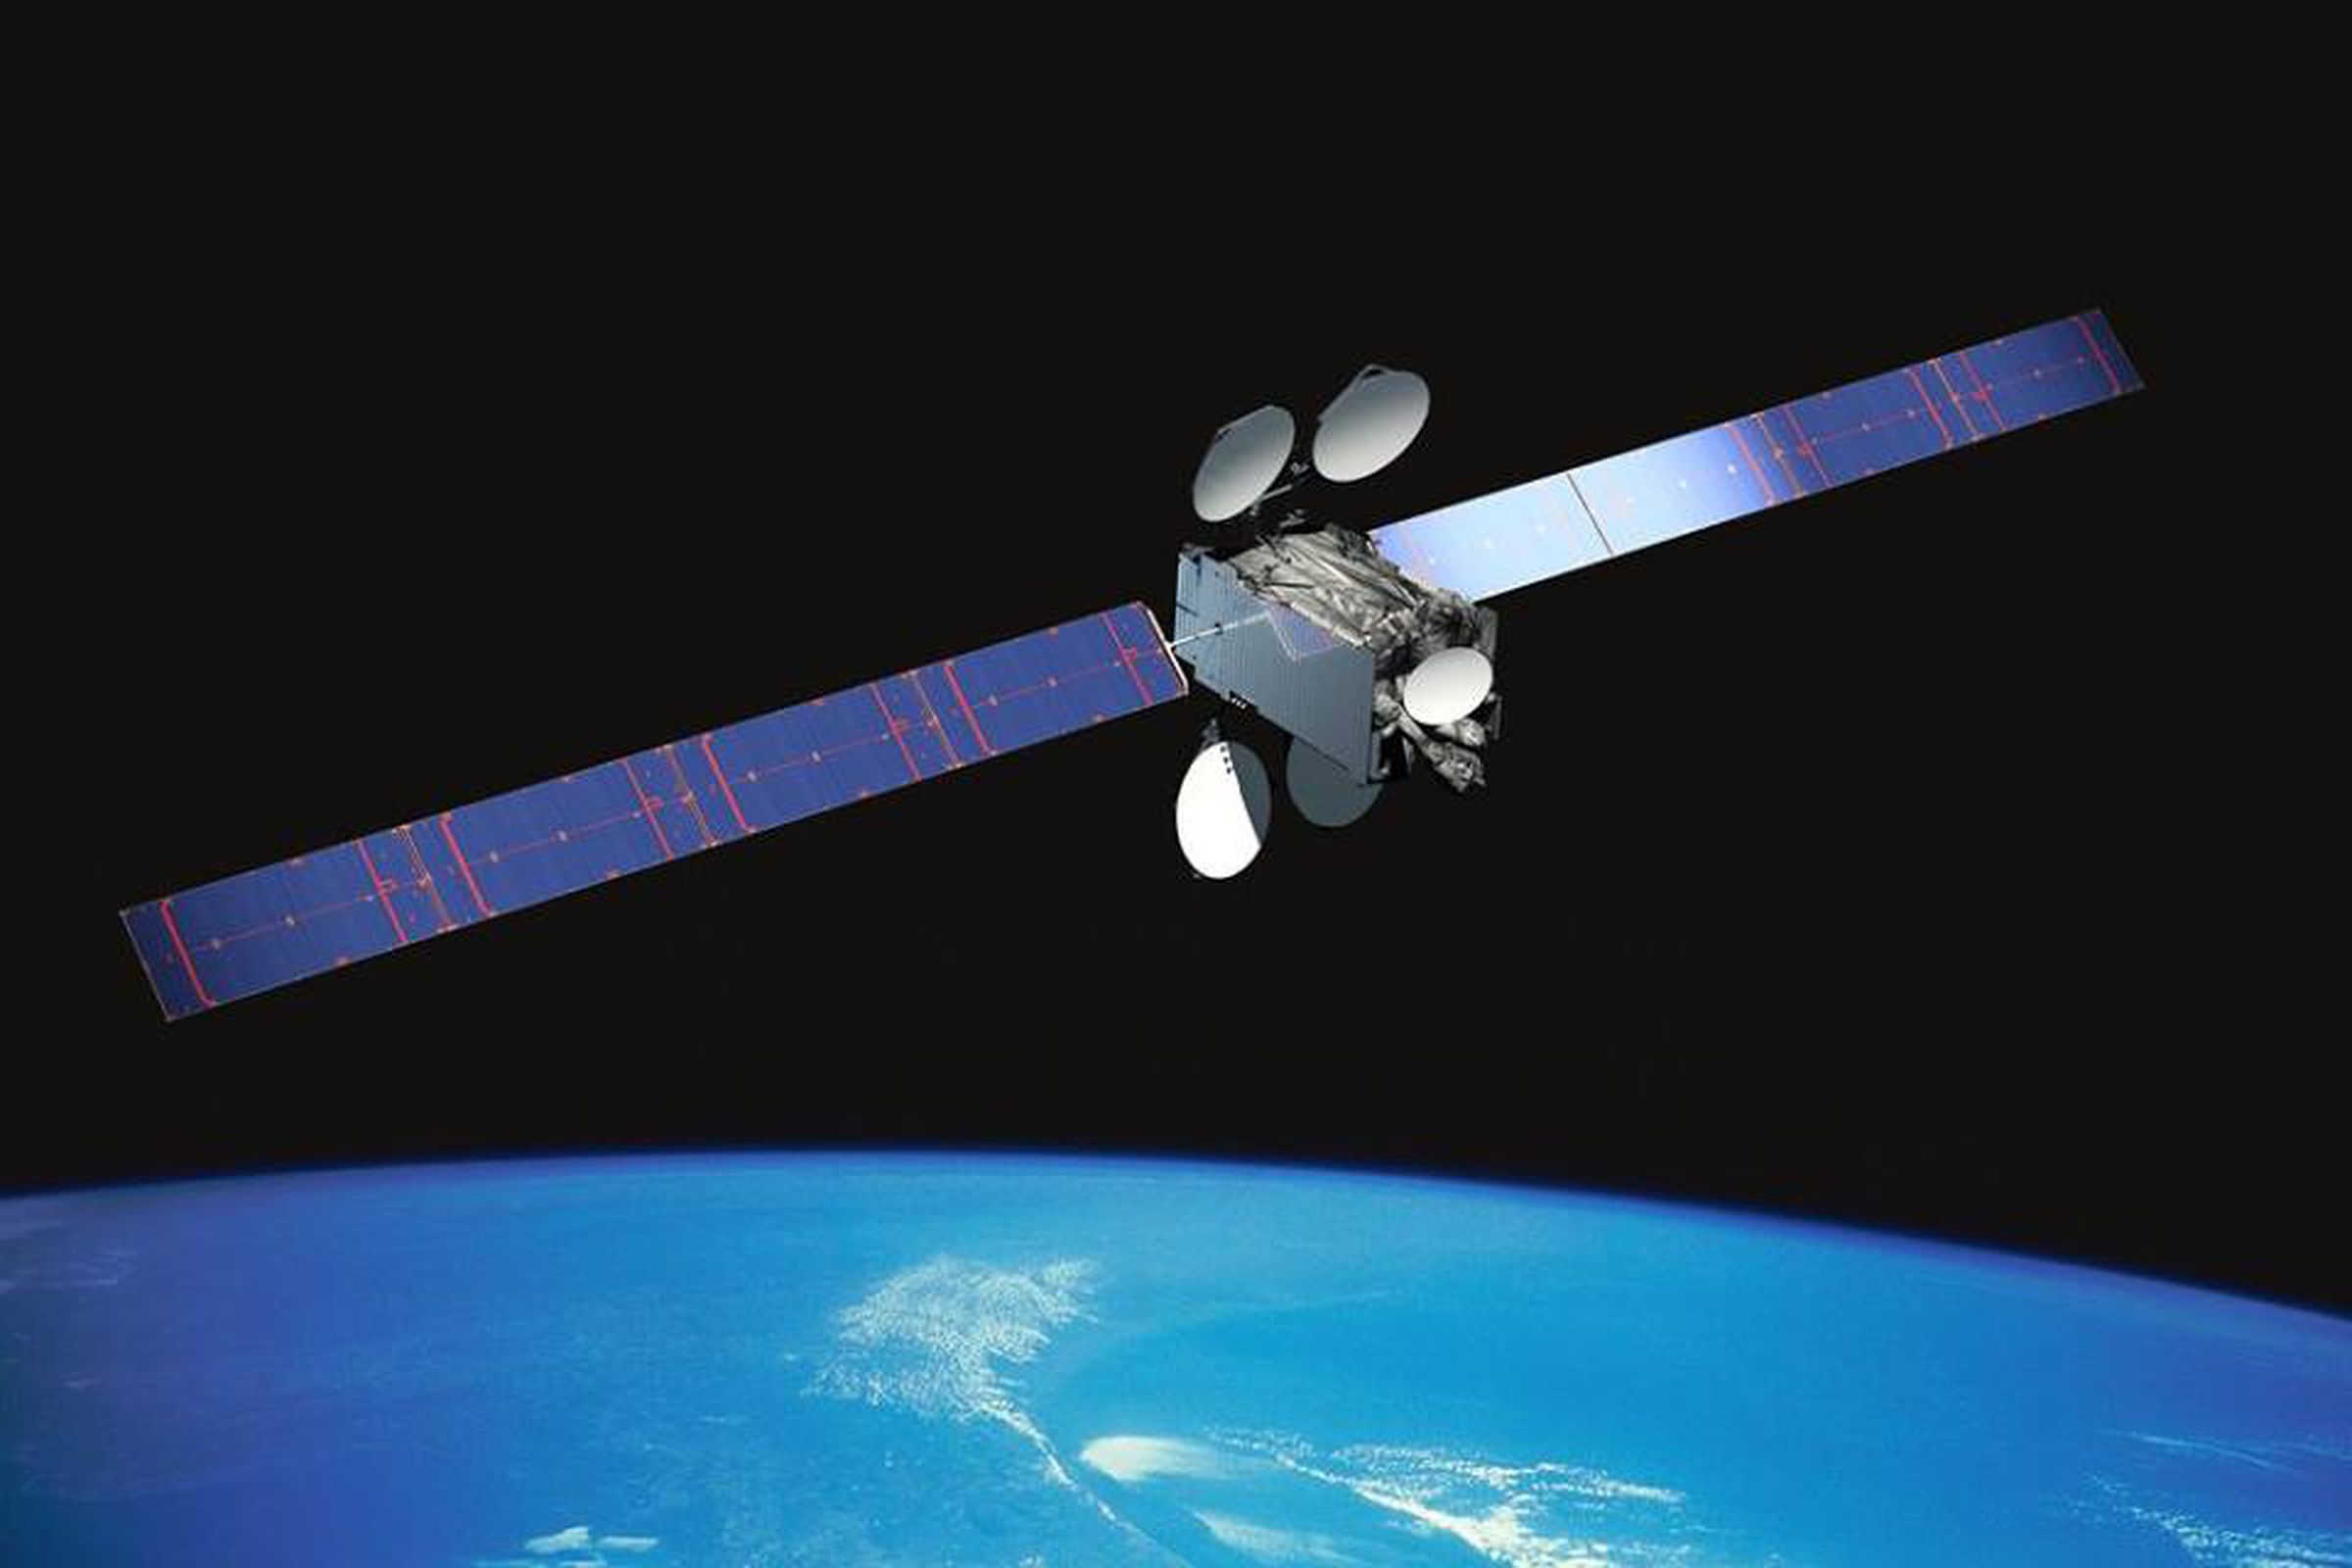 An artistic rendering of Intelsat 29e in orbit